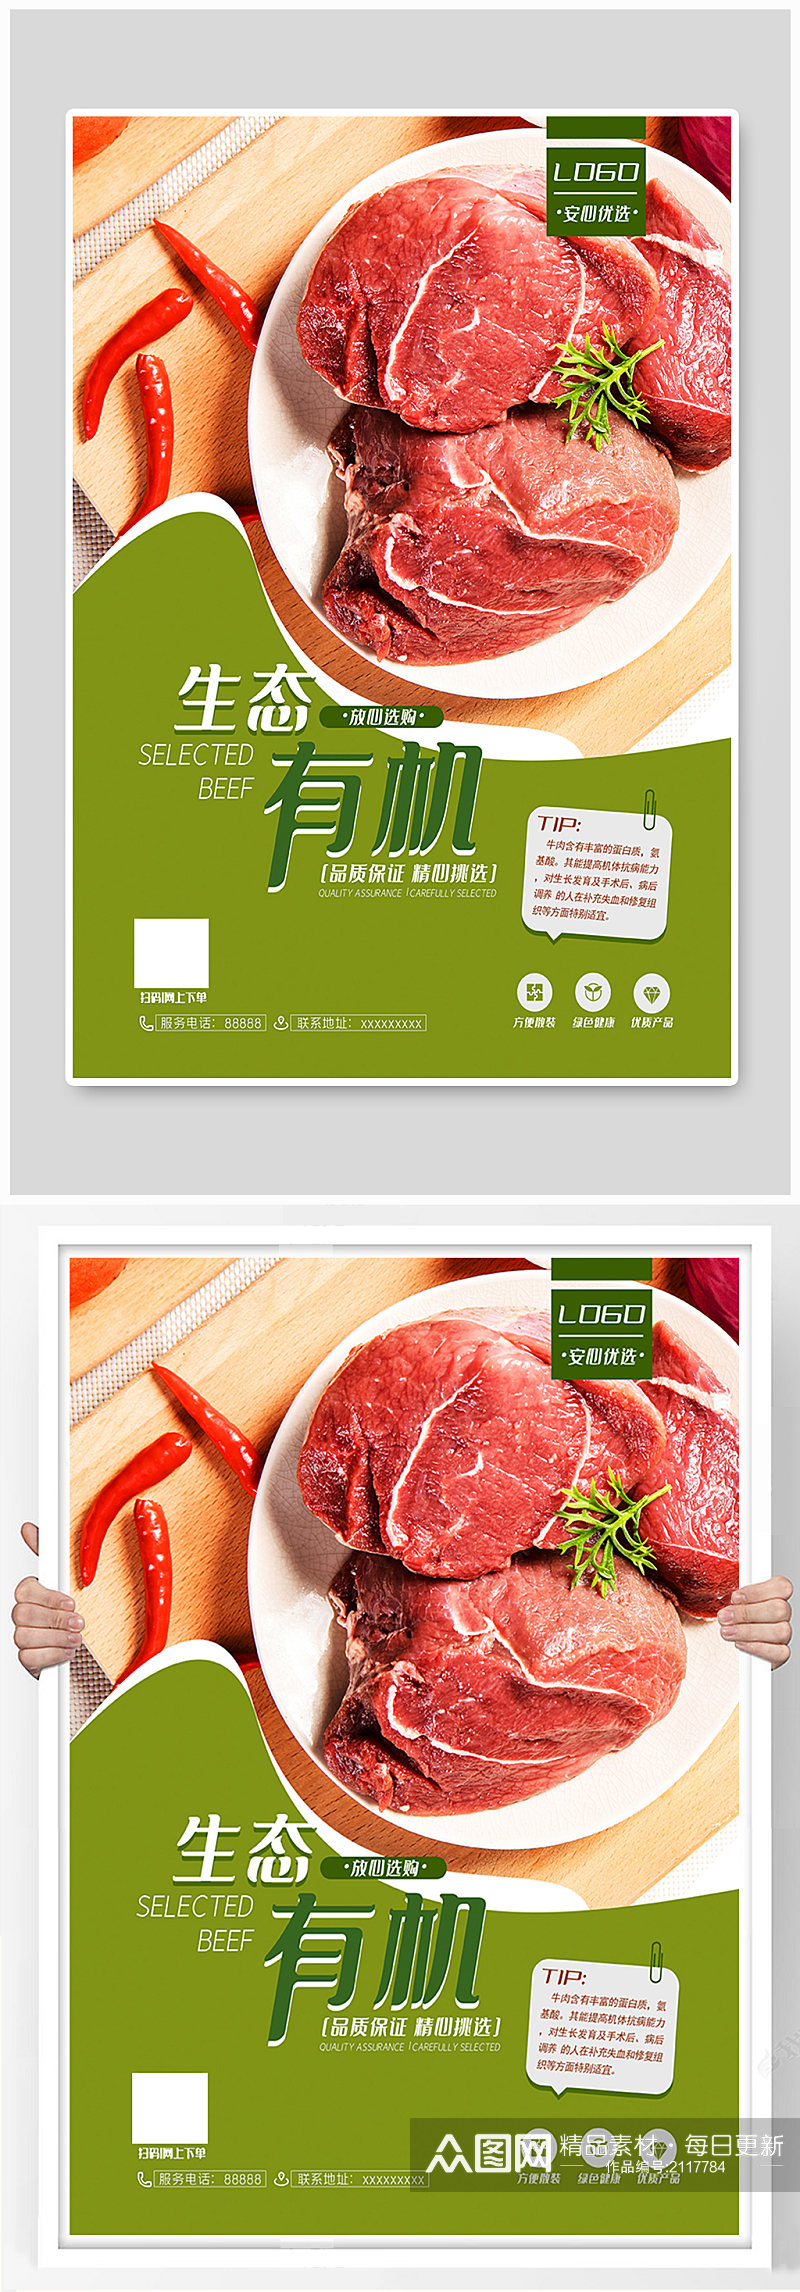 牛肉系列美食餐饮海报素材